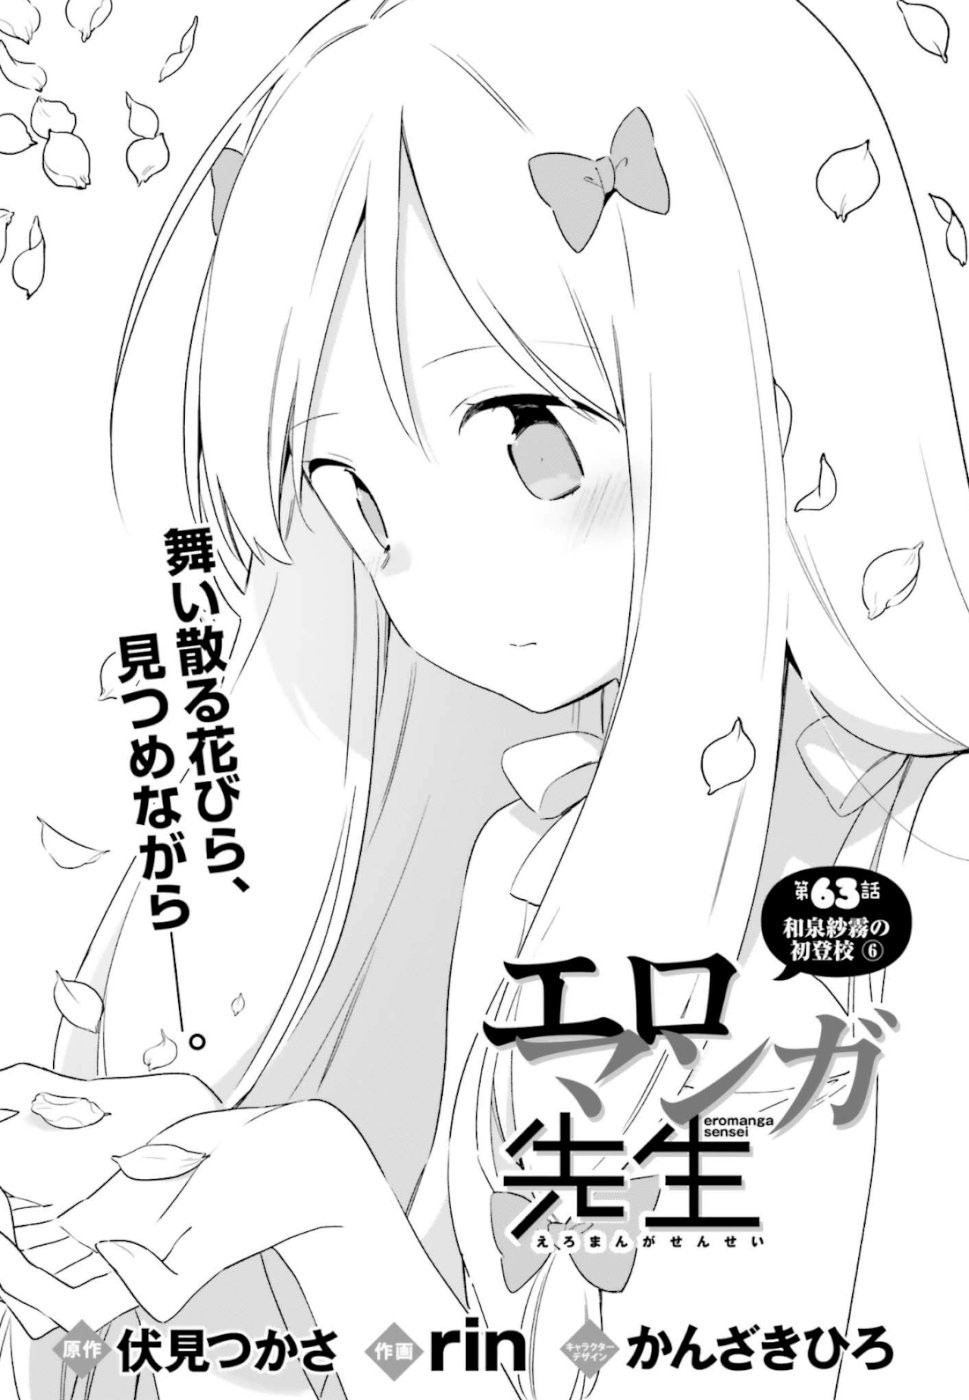 Ero Manga Sensei - Chapter 63 - Page 2